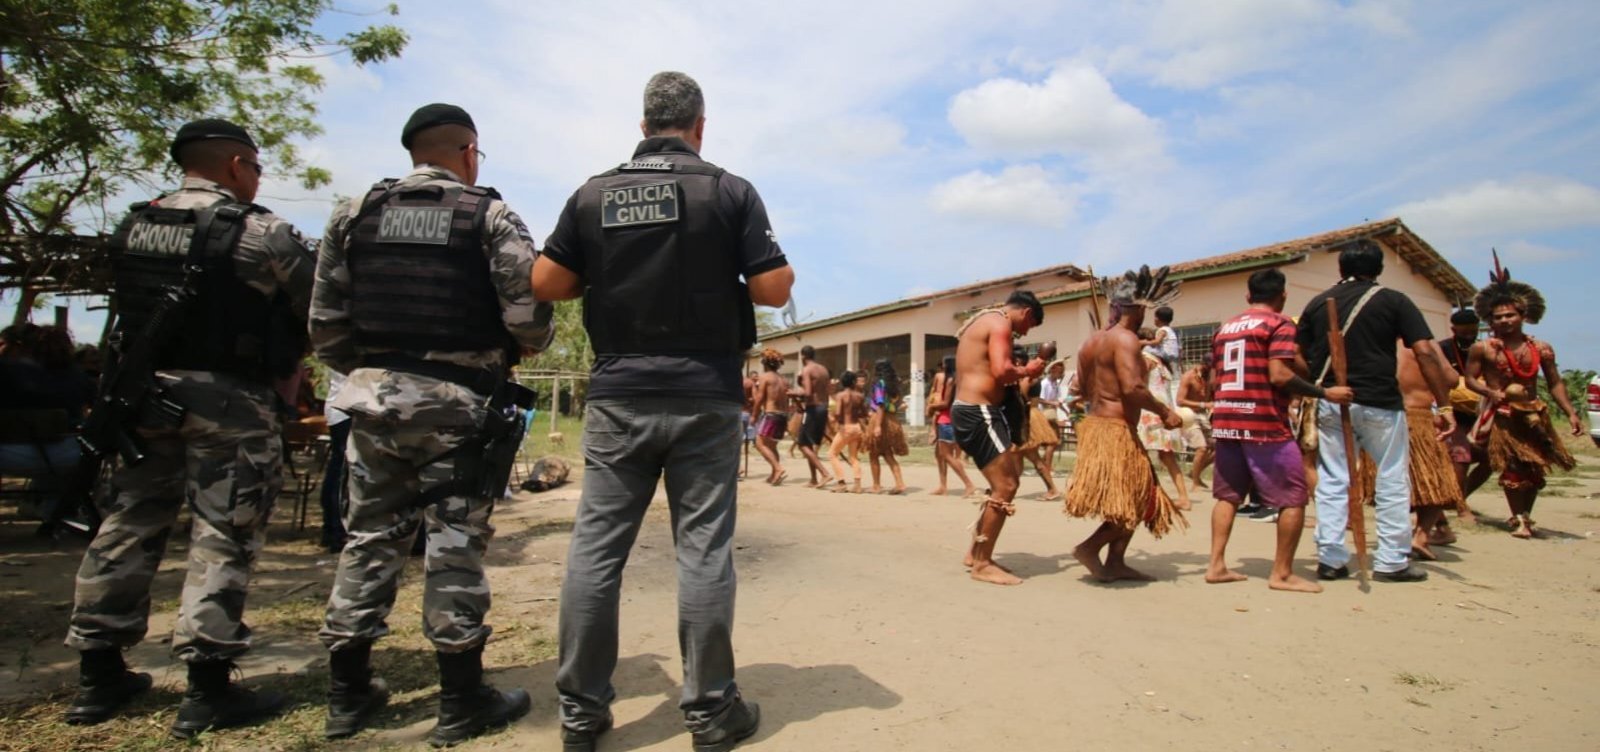 Ataques a indígenas no Sul do Brasil: MS, PR e RS